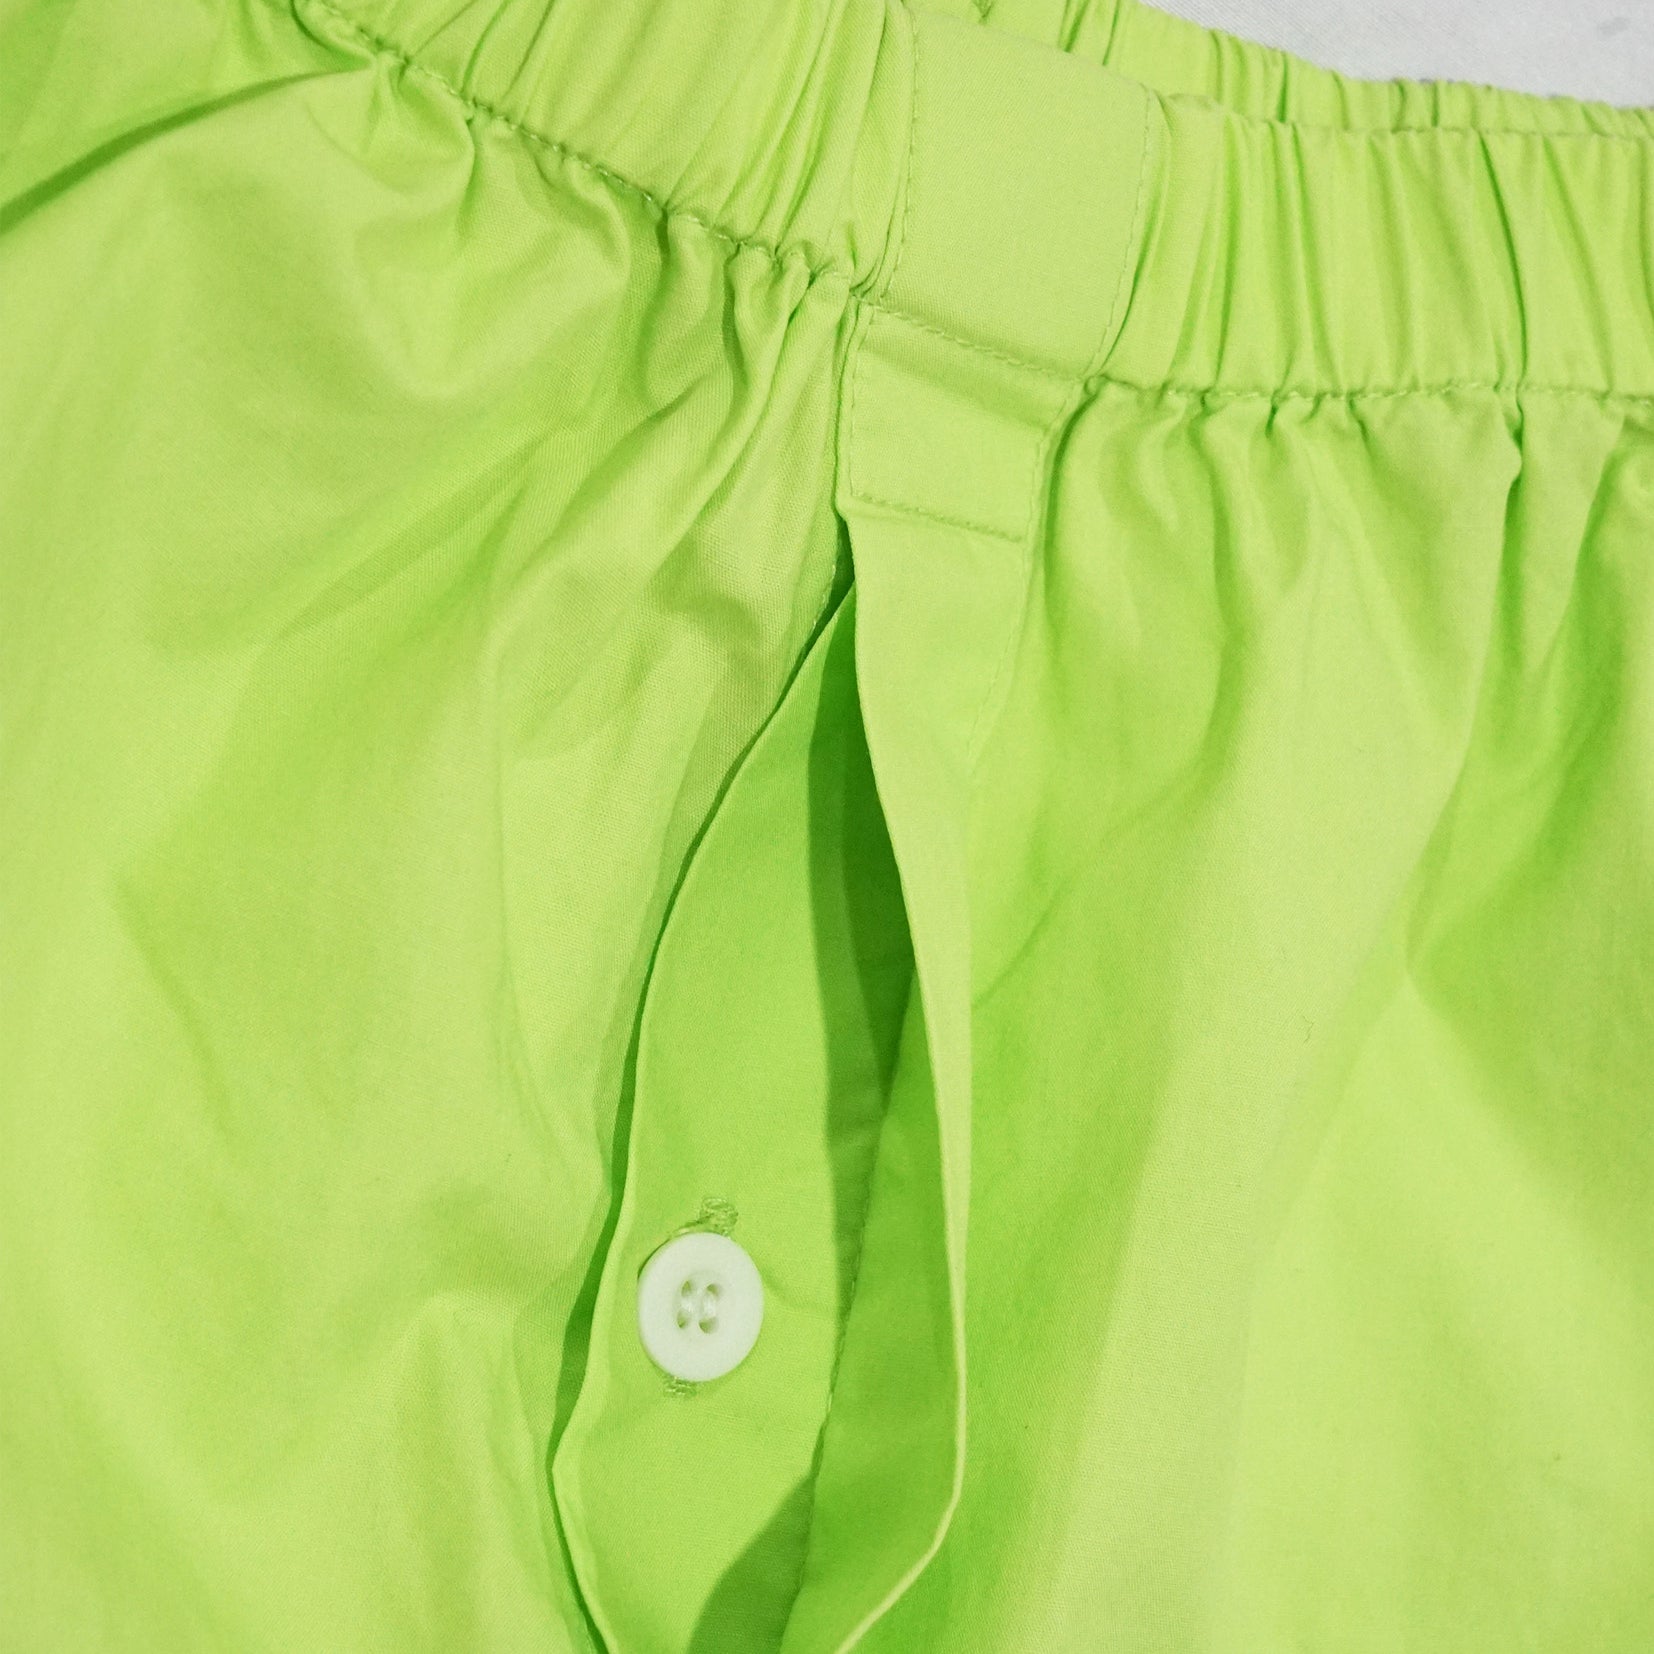 Unisex boxer shorts underwear - lawn green